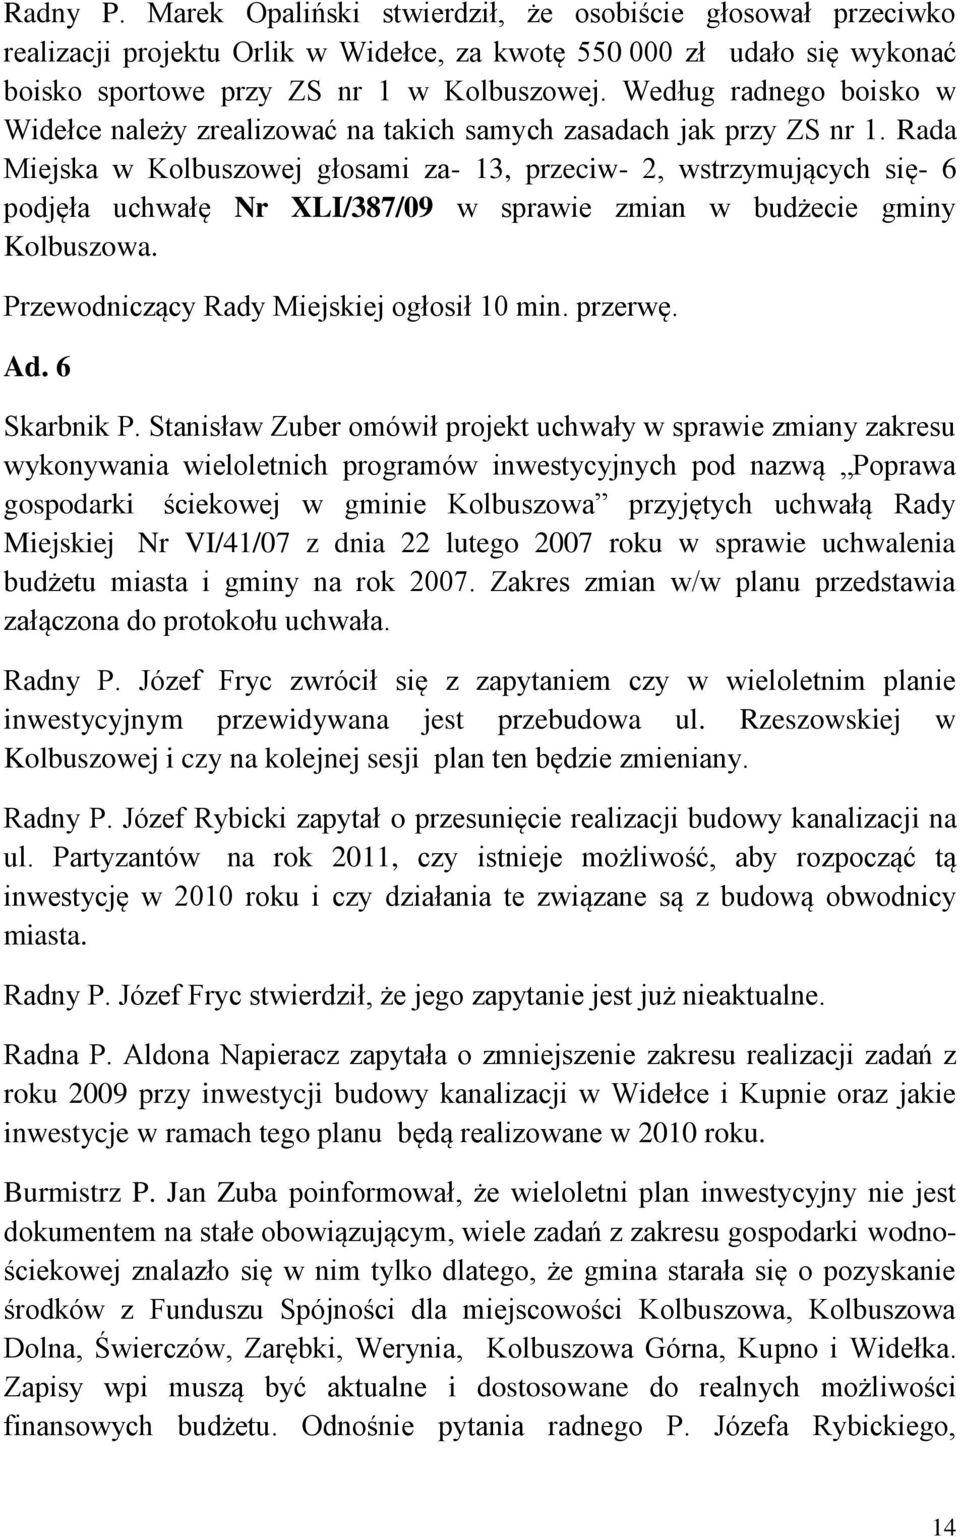 Rada Miejska w Kolbuszowej głosami za- 13, przeciw- 2, wstrzymujących się- 6 podjęła uchwałę Nr XLI/387/09 w sprawie zmian w budżecie gminy Kolbuszowa. Przewodniczący Rady Miejskiej ogłosił 10 min.